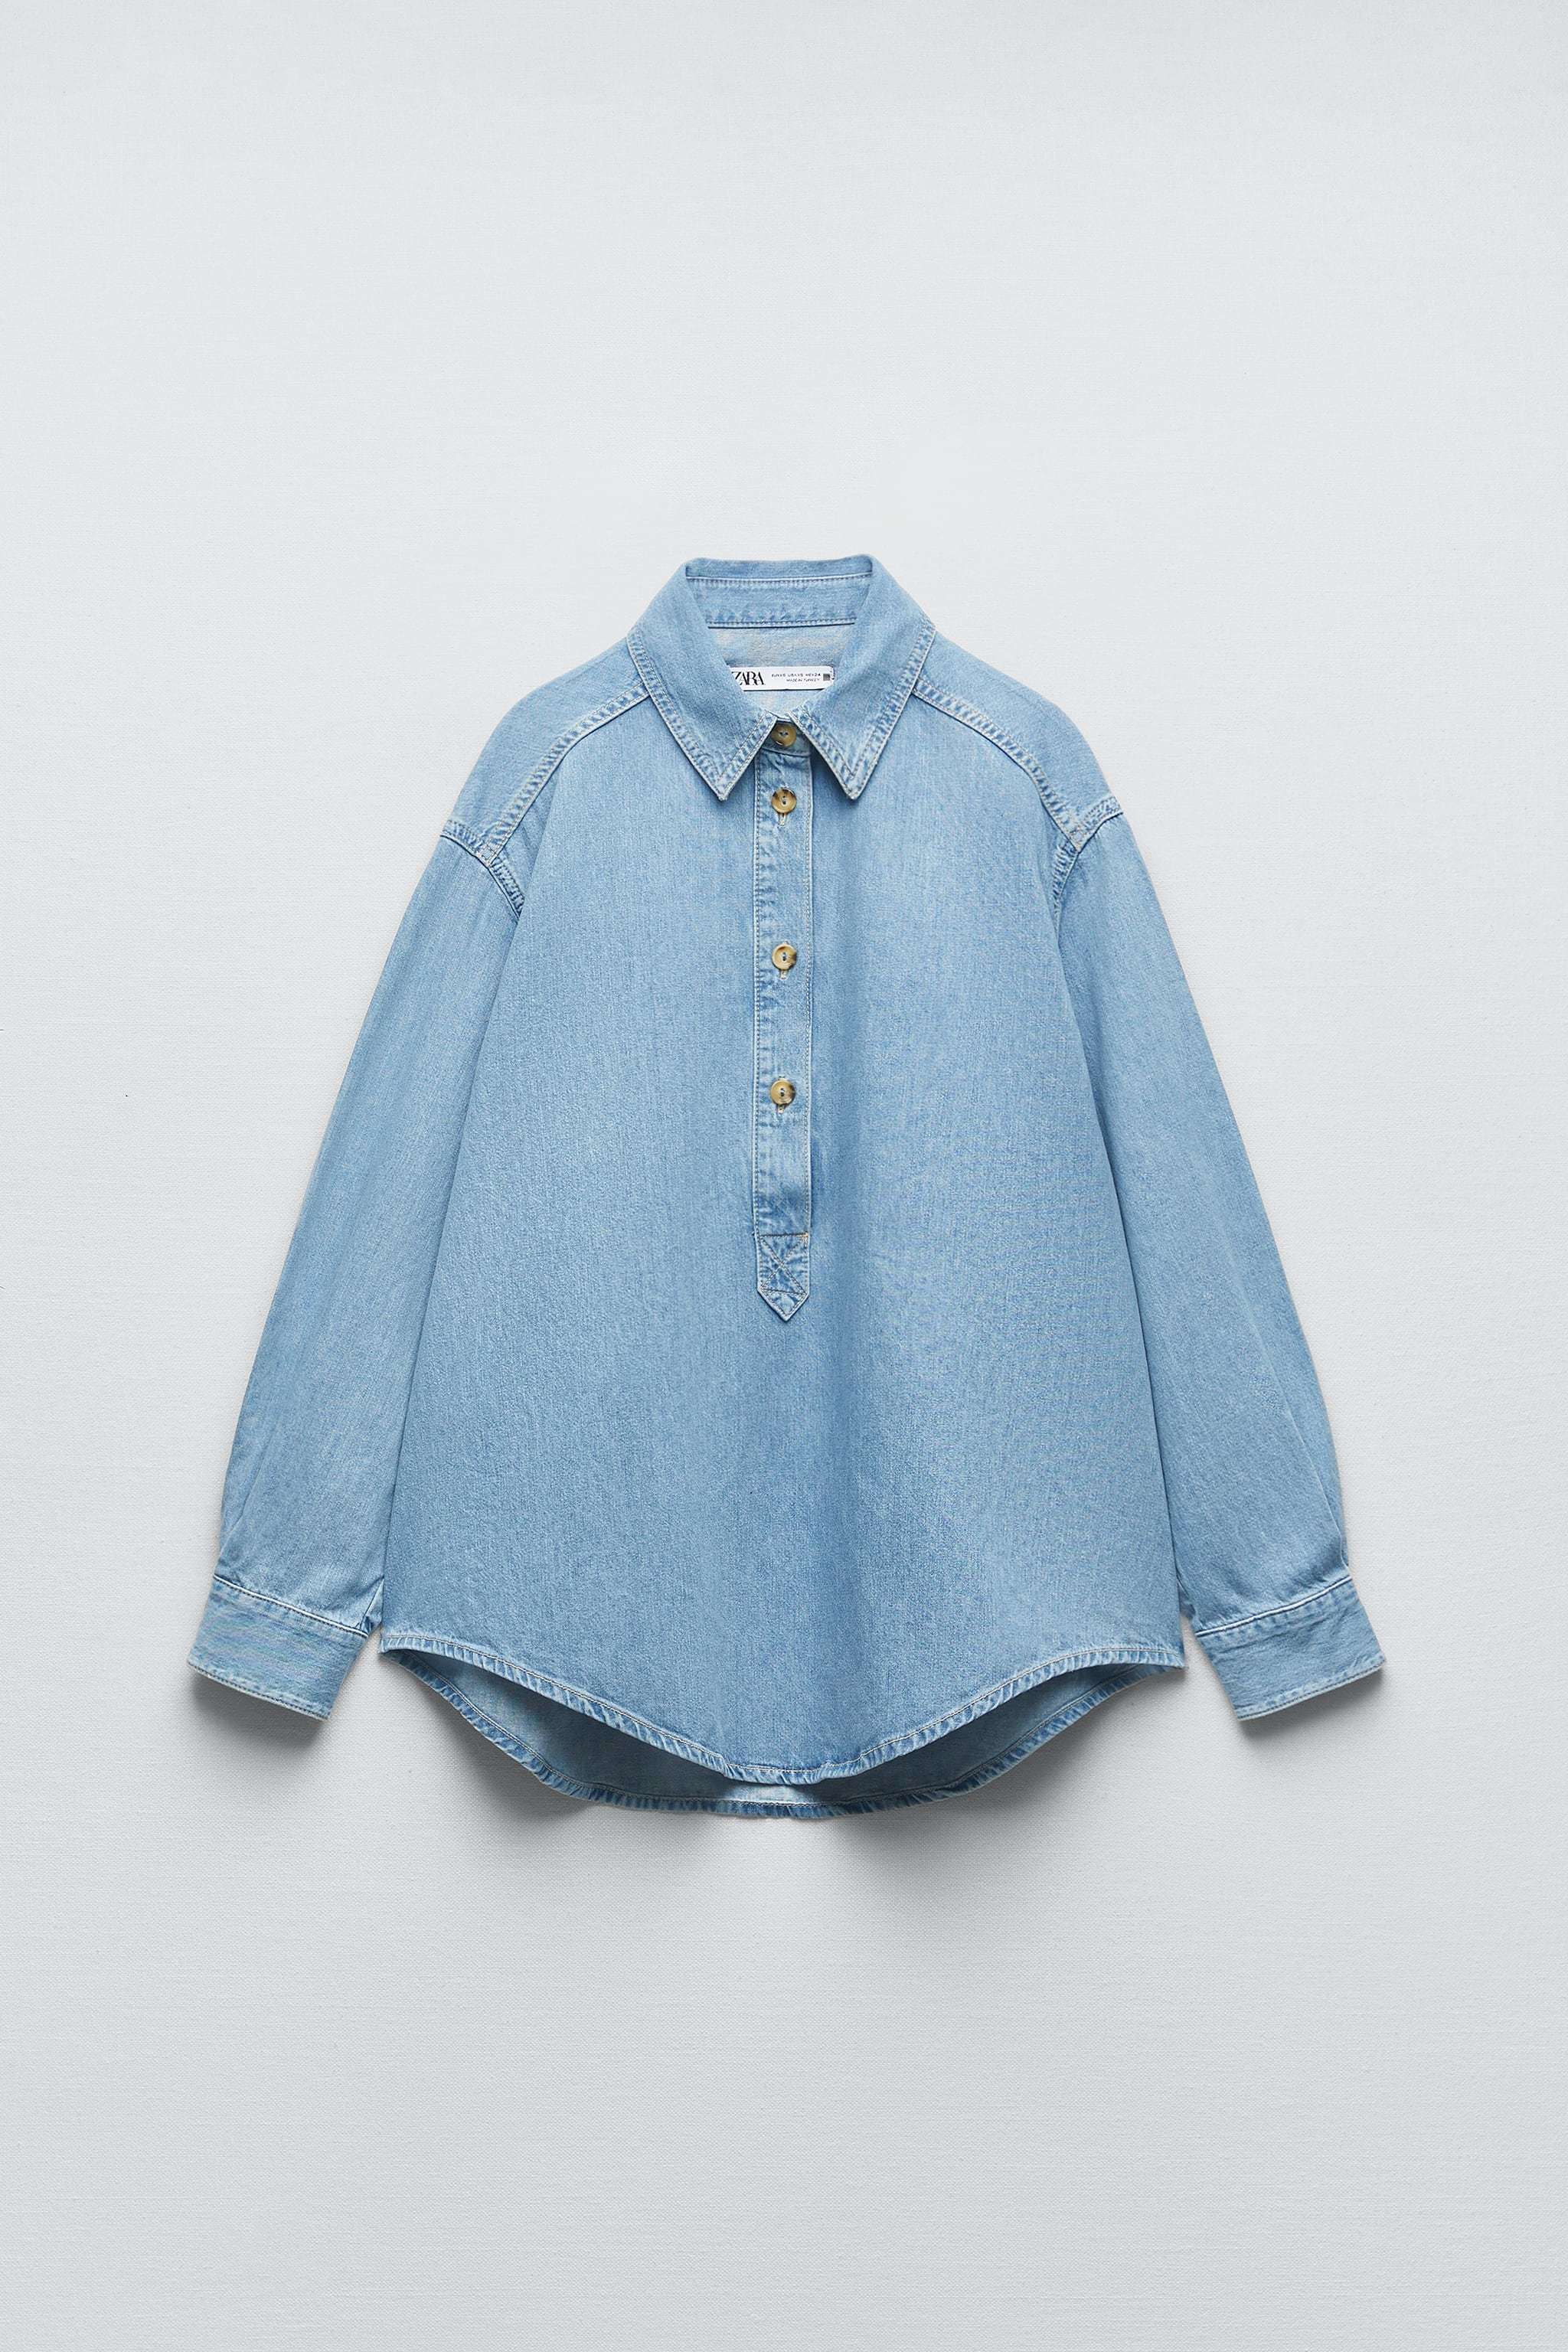 Camisa denim, de Zara (29,95 euros).